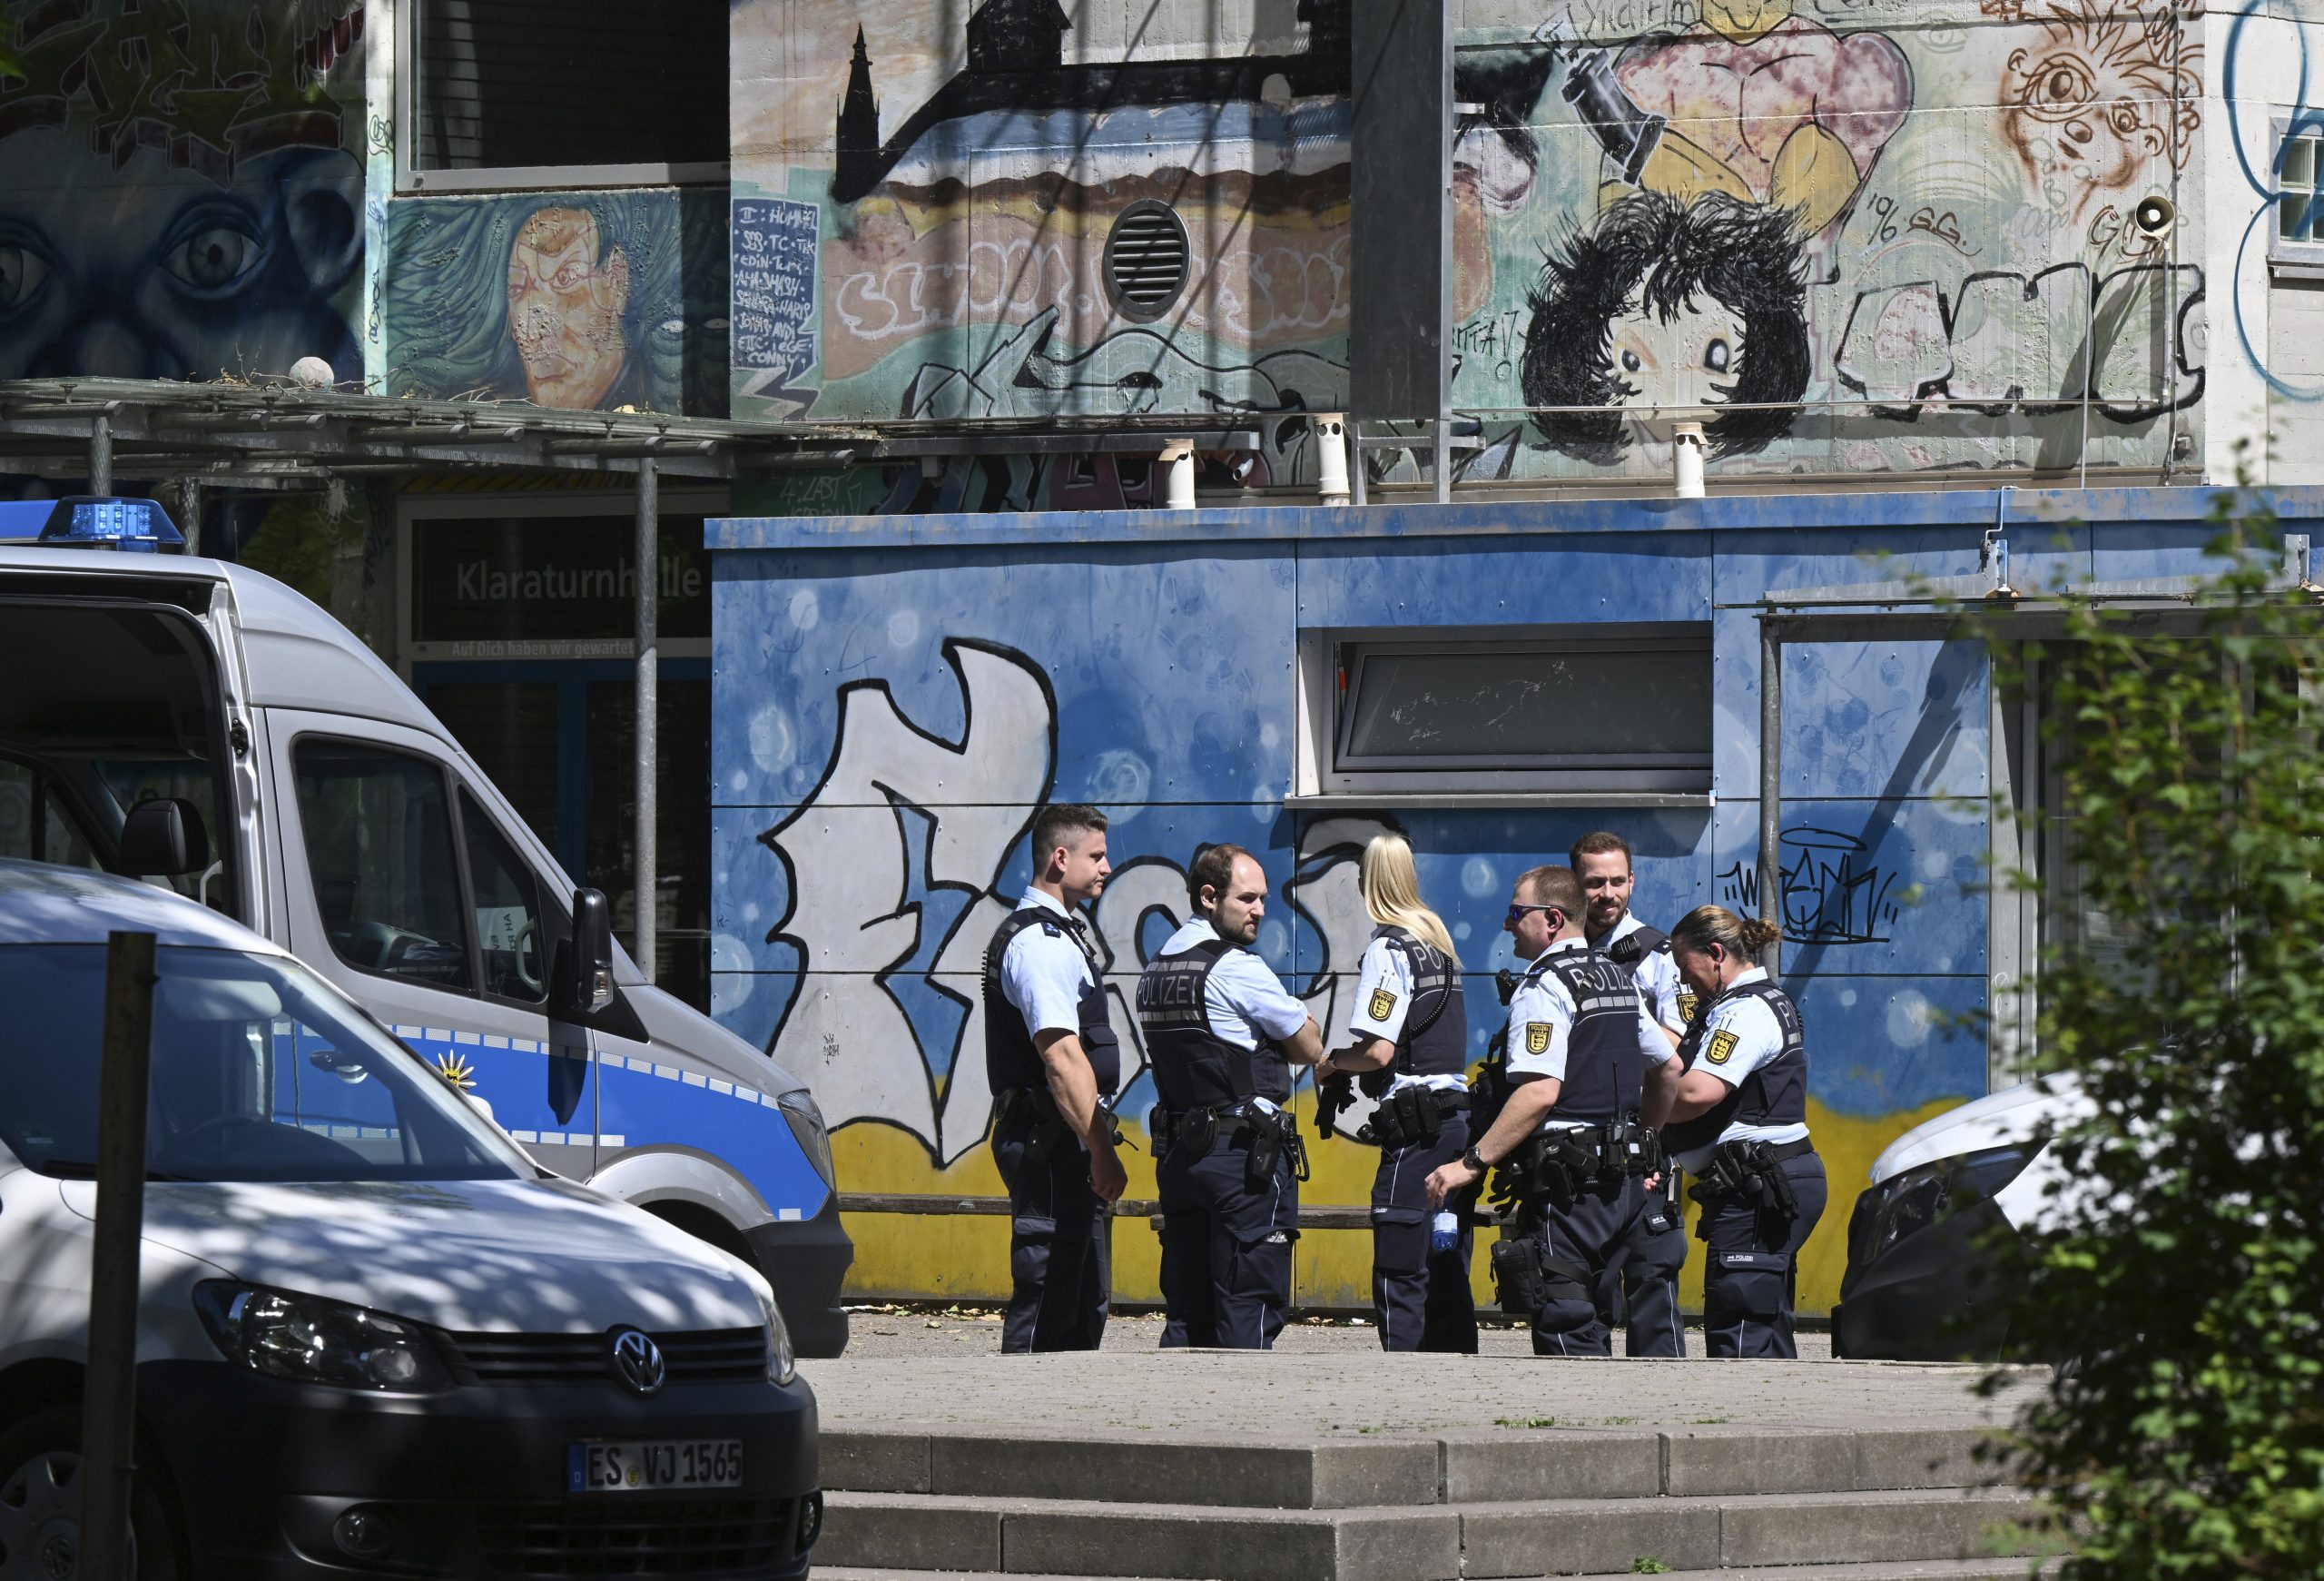 德国小学门口男子持刀伤人 妇女女童重伤 警方追查凶嫌